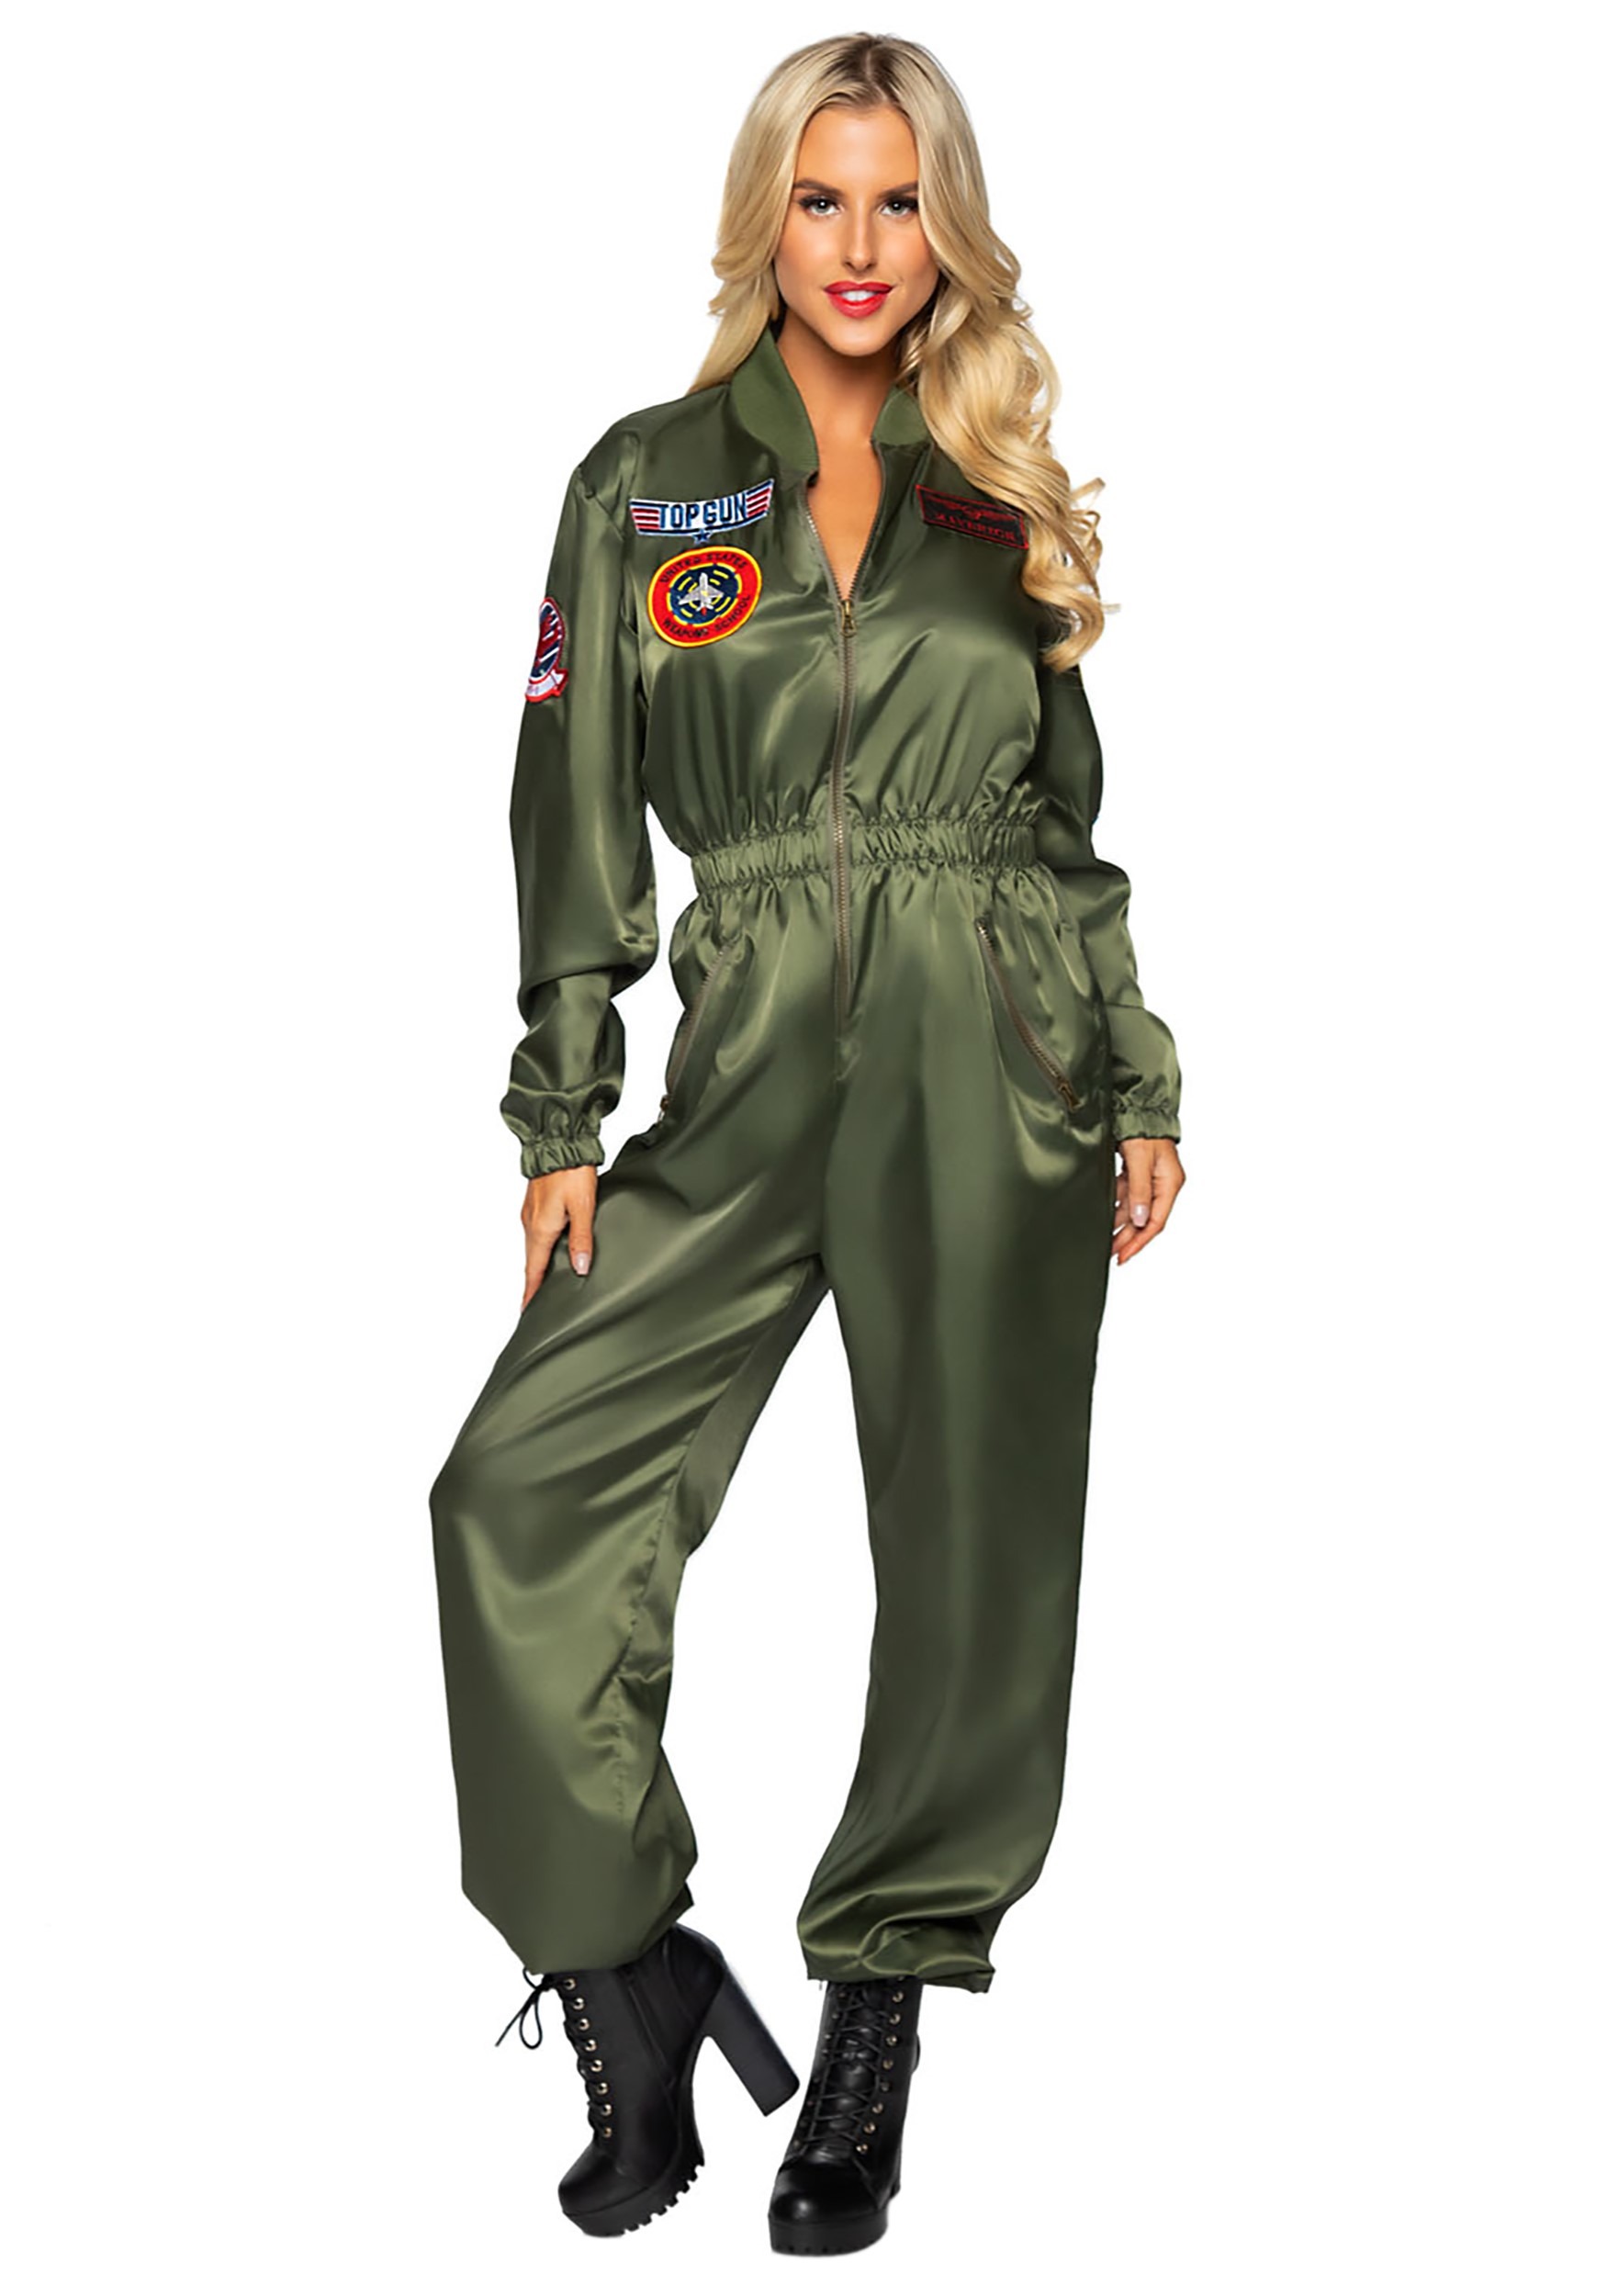 Top Gun Women’s Flight Suit Costume